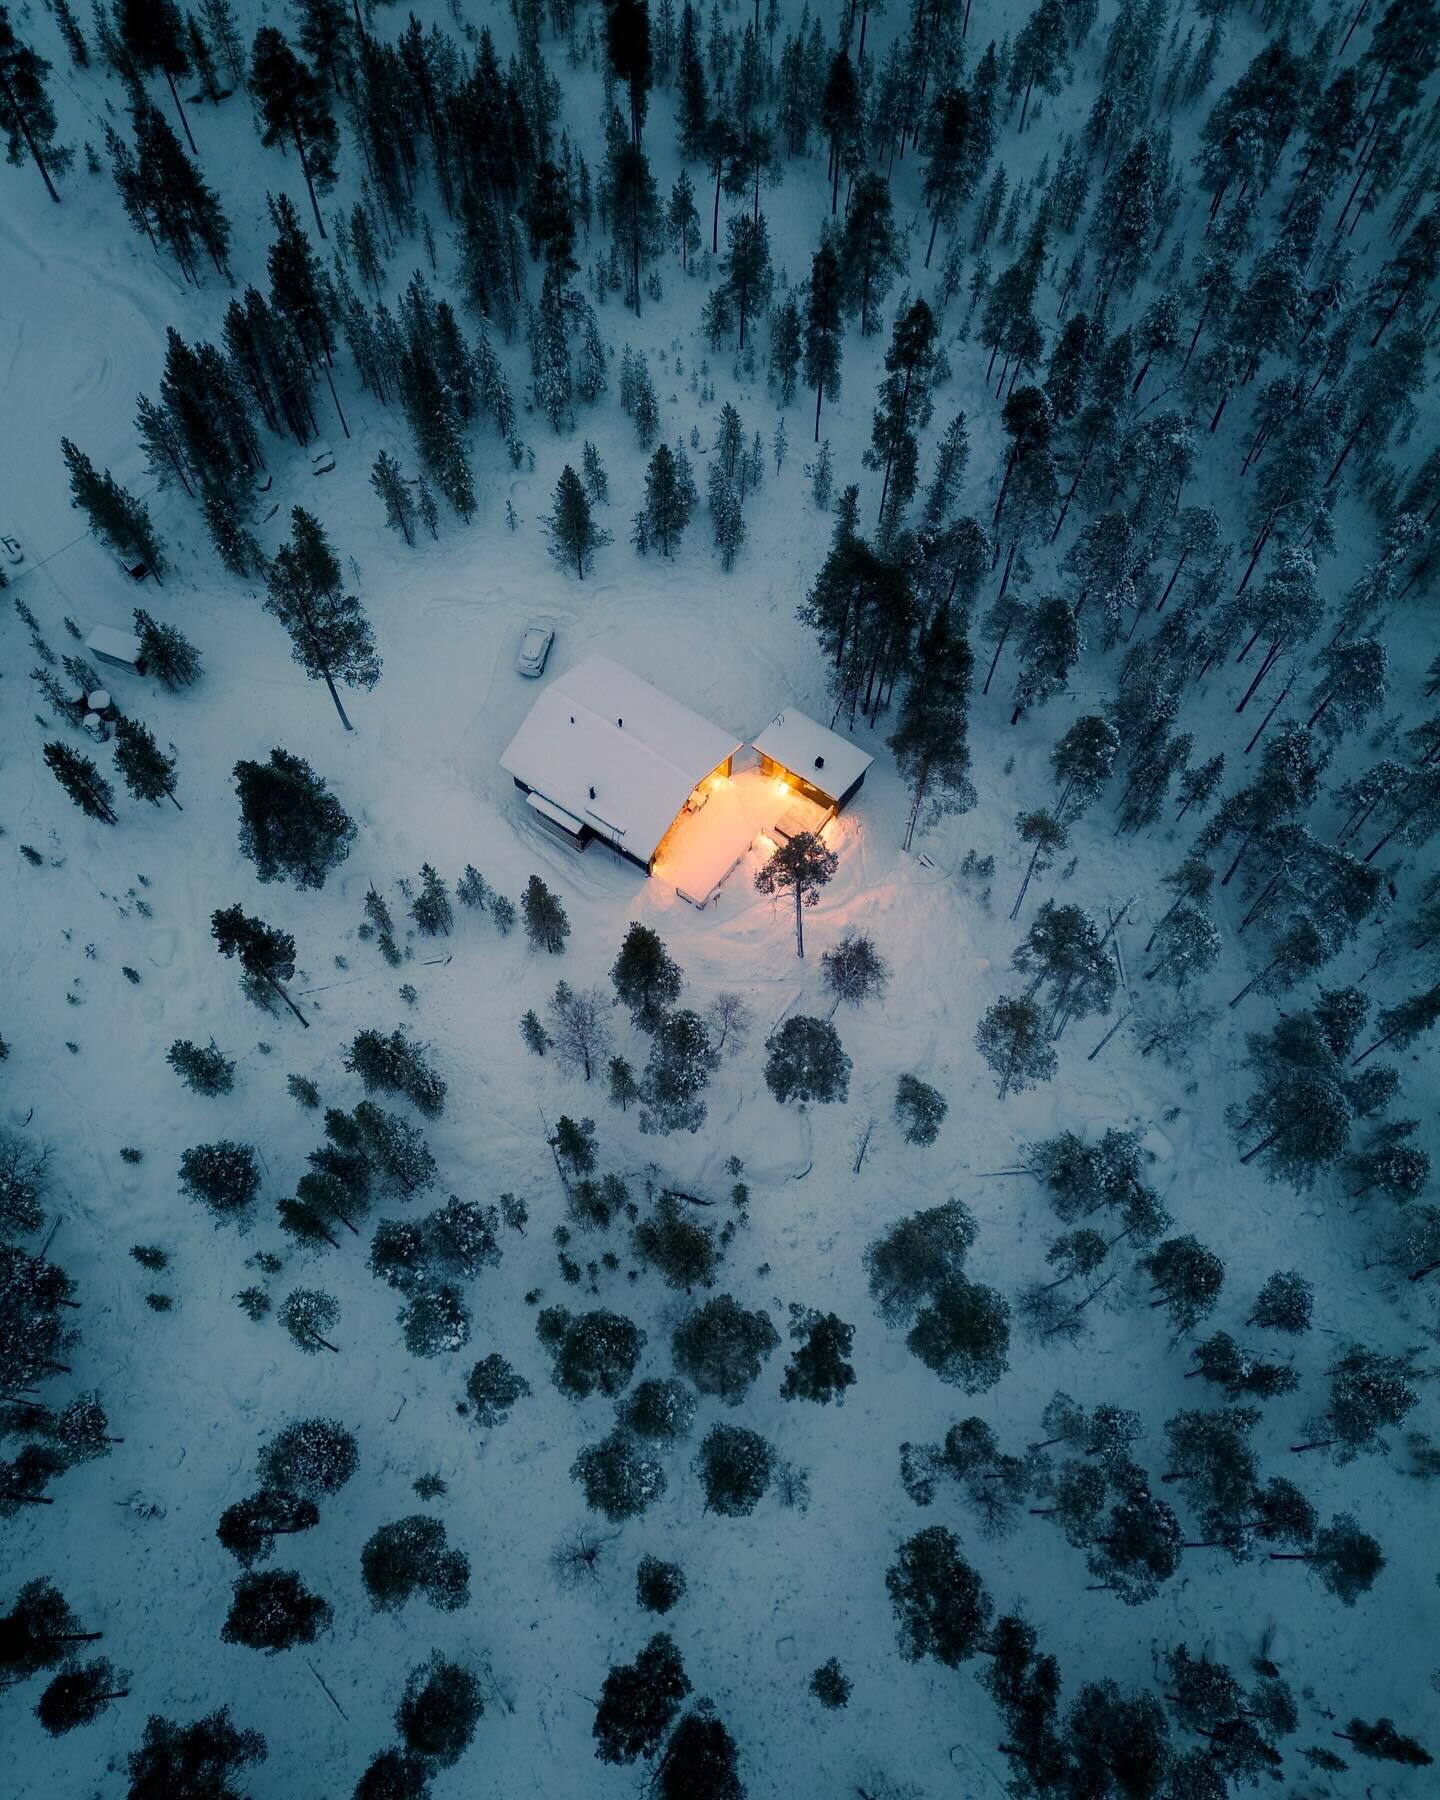 ❄️🌲 Eine aufregende und gleichzeitig erholsame Woche, in diesem wundervollen Haus von @norlightcottages 
.
#lapland #finland #nature #lappi #visitlapland #travel #winter #snow #visitfinland #laplandfinland #naturephotography #suomi #arcticcircle #wi